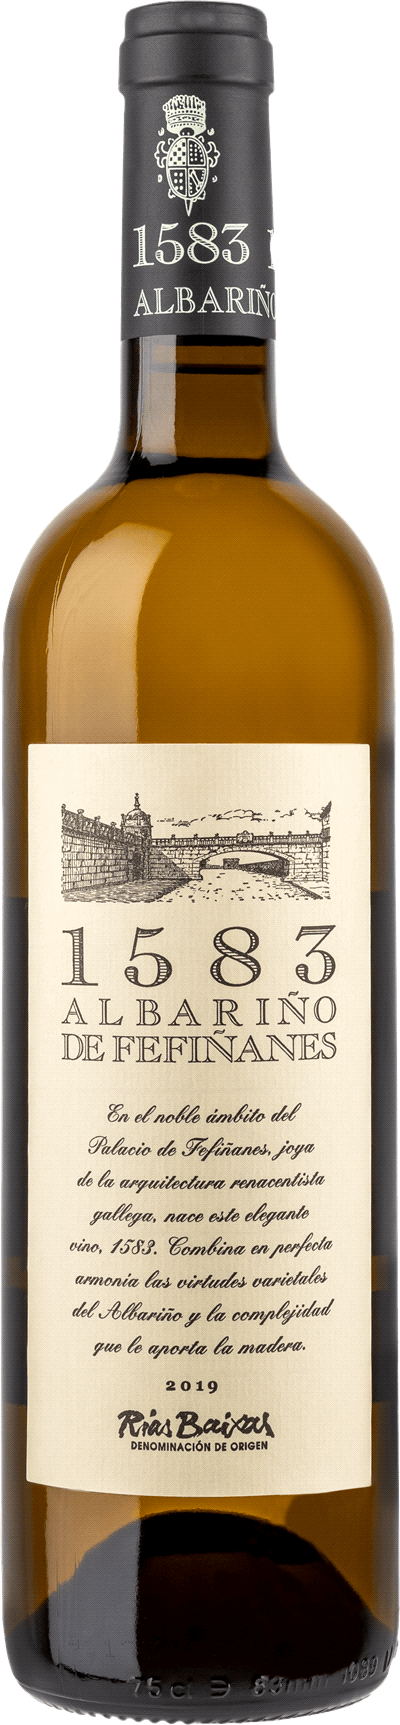 1583 Albariño de Fefiñanes